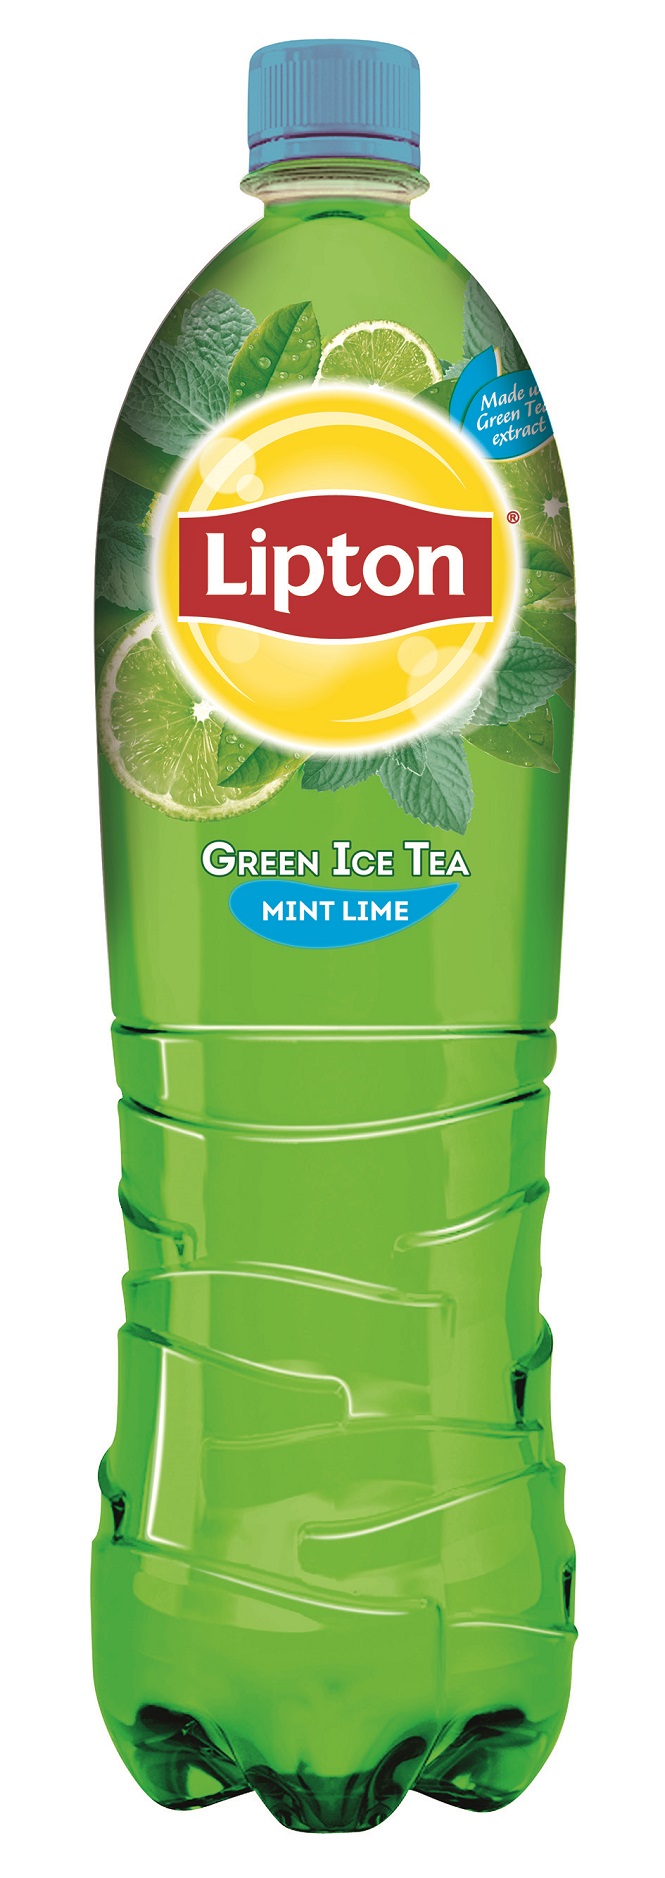 8-Lipton_Green_Lemon_mint_lime_1,5L.jpg